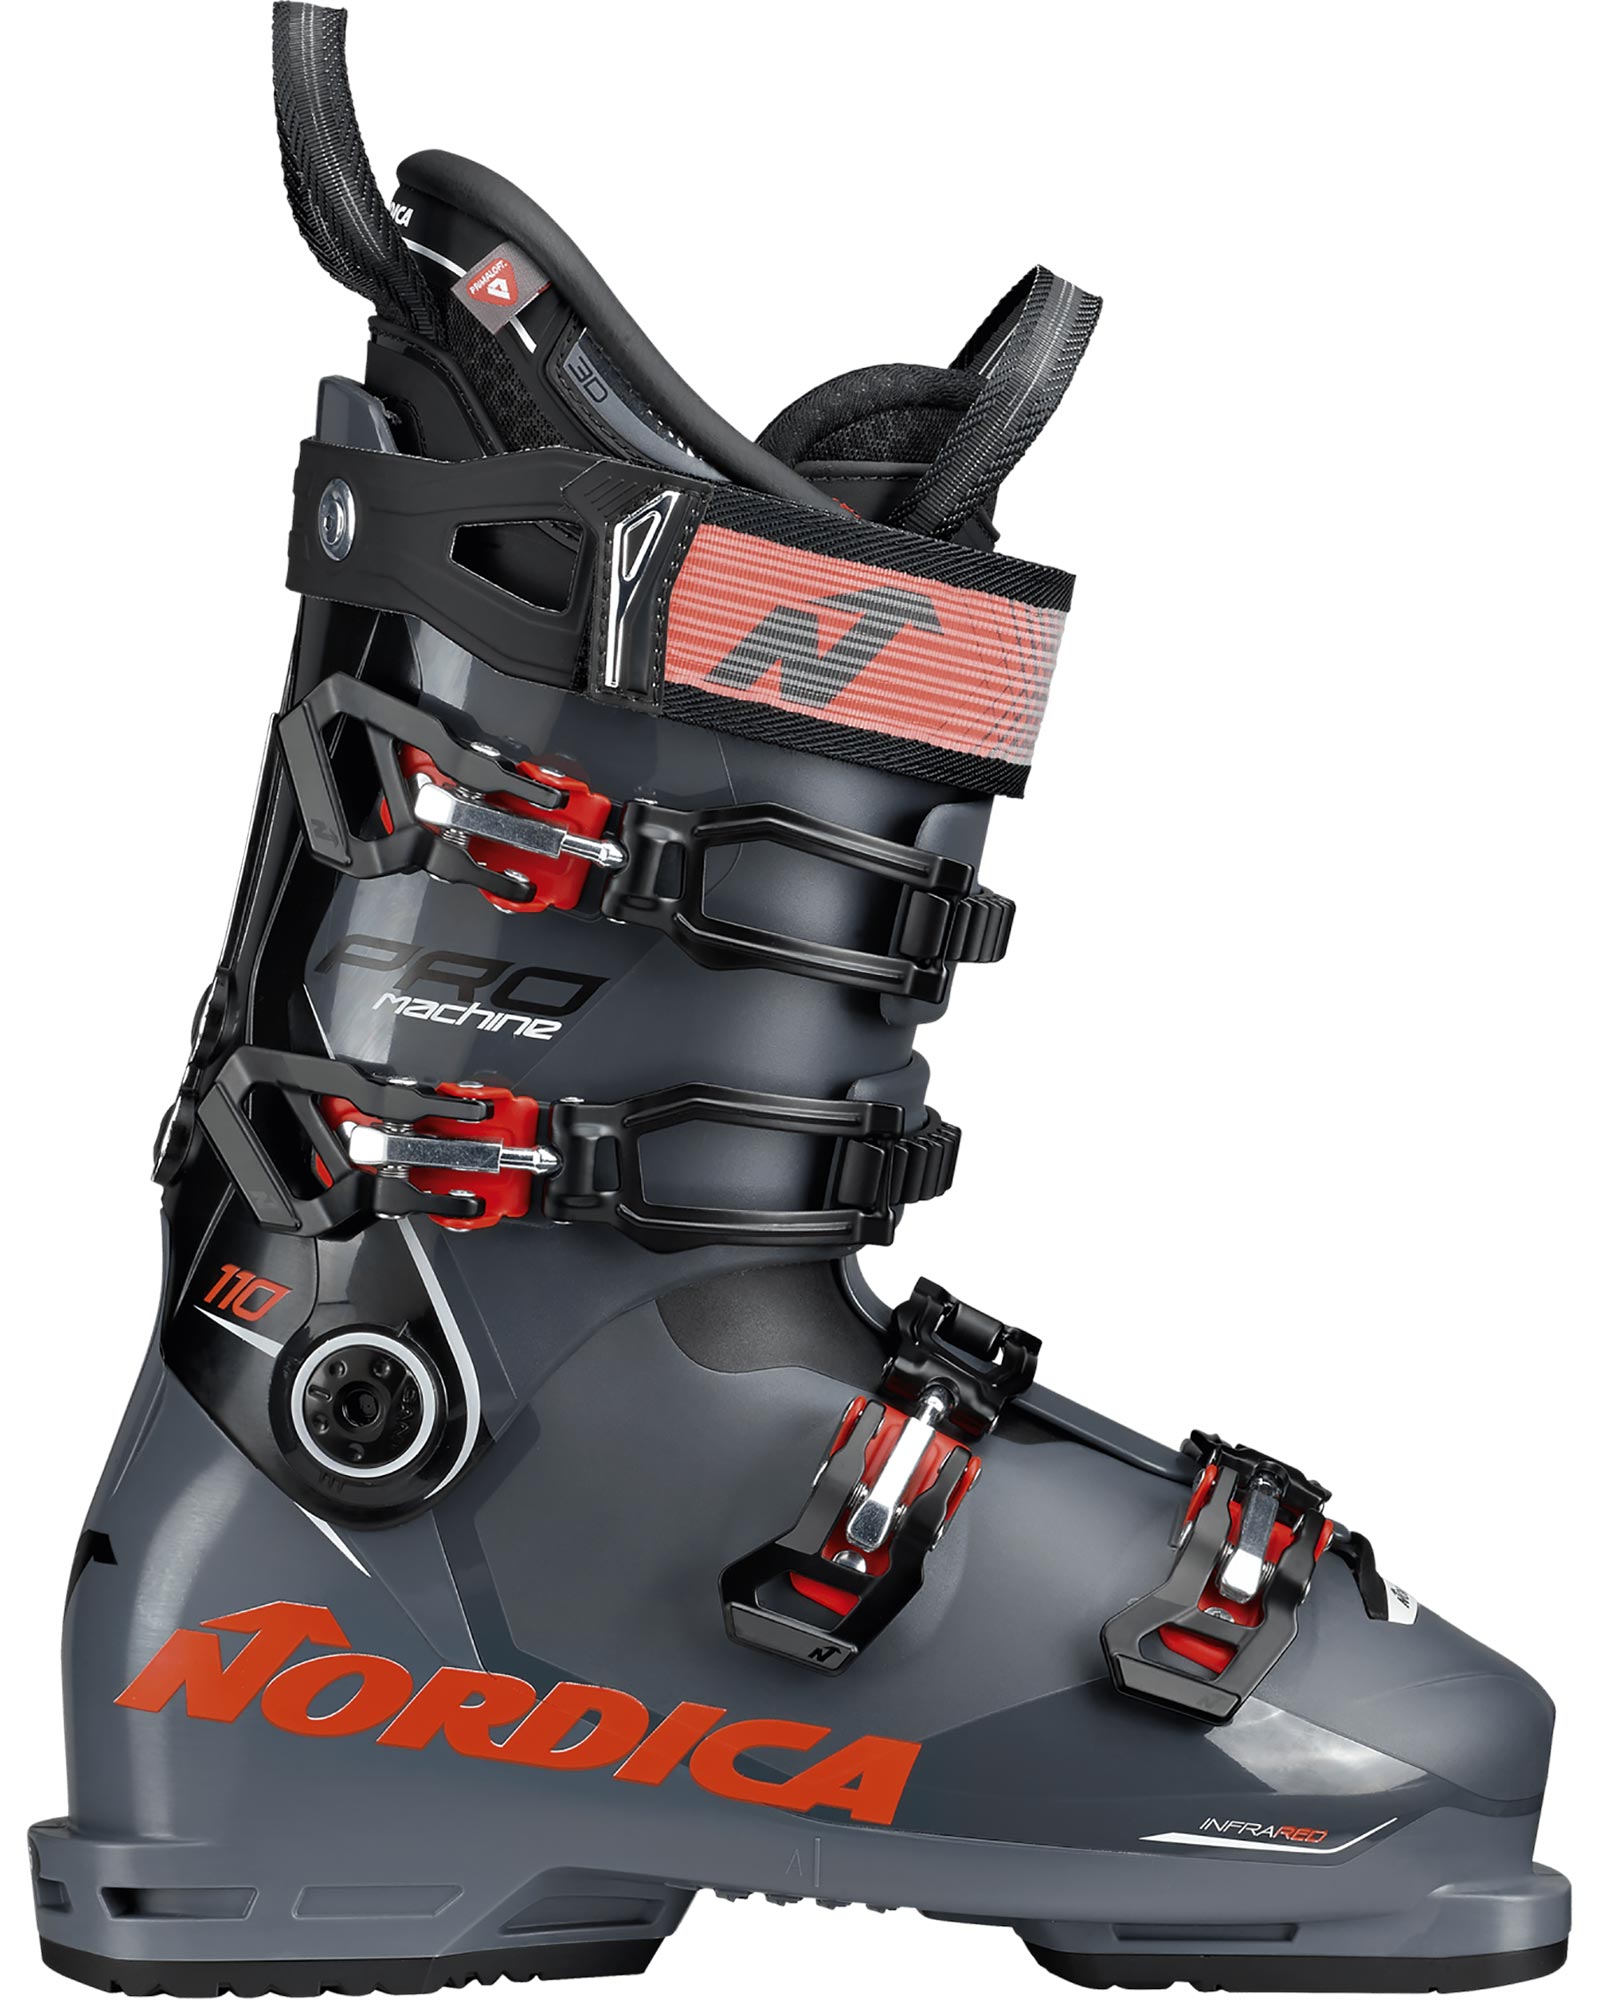 Nordica Promachine 110 Men’s Ski Boots 2022 - Anthracite/black/red MP 25.5